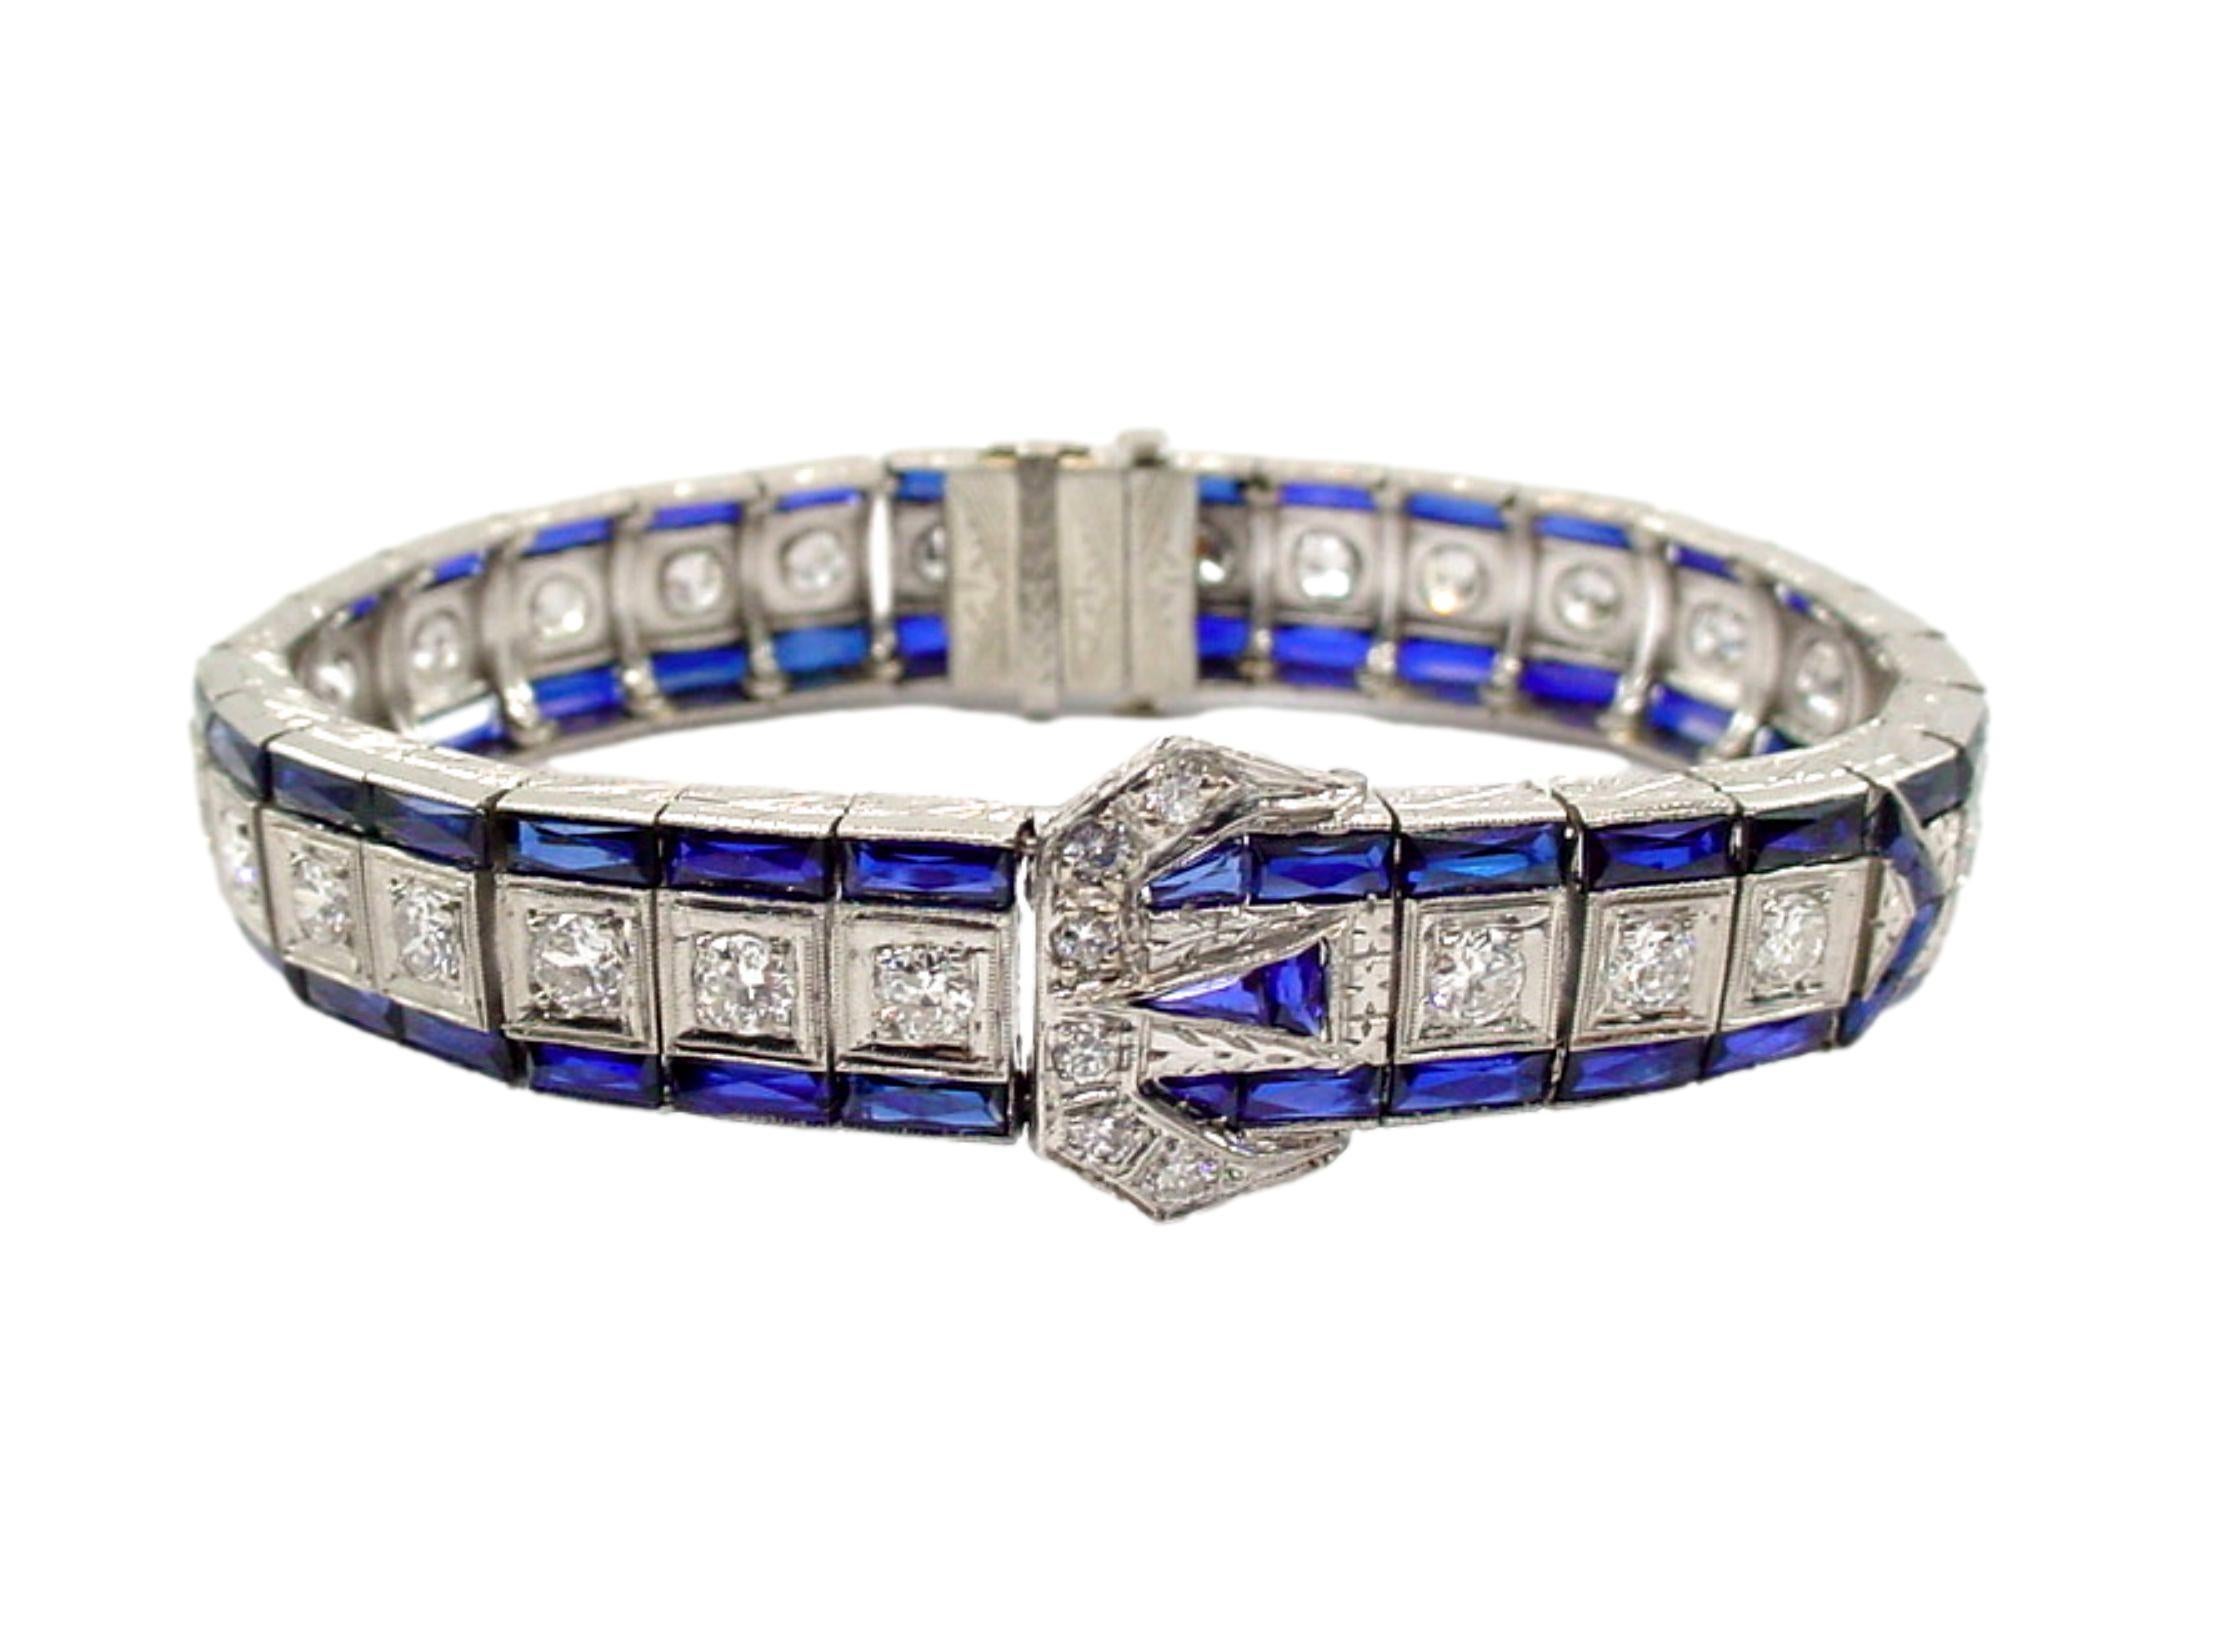 Ikonisches Original-Armband aus der Art Deco Platinlinie...

Sie ist aus kostbarem Platin gefertigt und mit Diamanten und synthetischen Saphiren in einem hübschen Schnallenmotiv besetzt...

Diese Schönheit passt zu einem KLEINEN Handgelenk, Länge